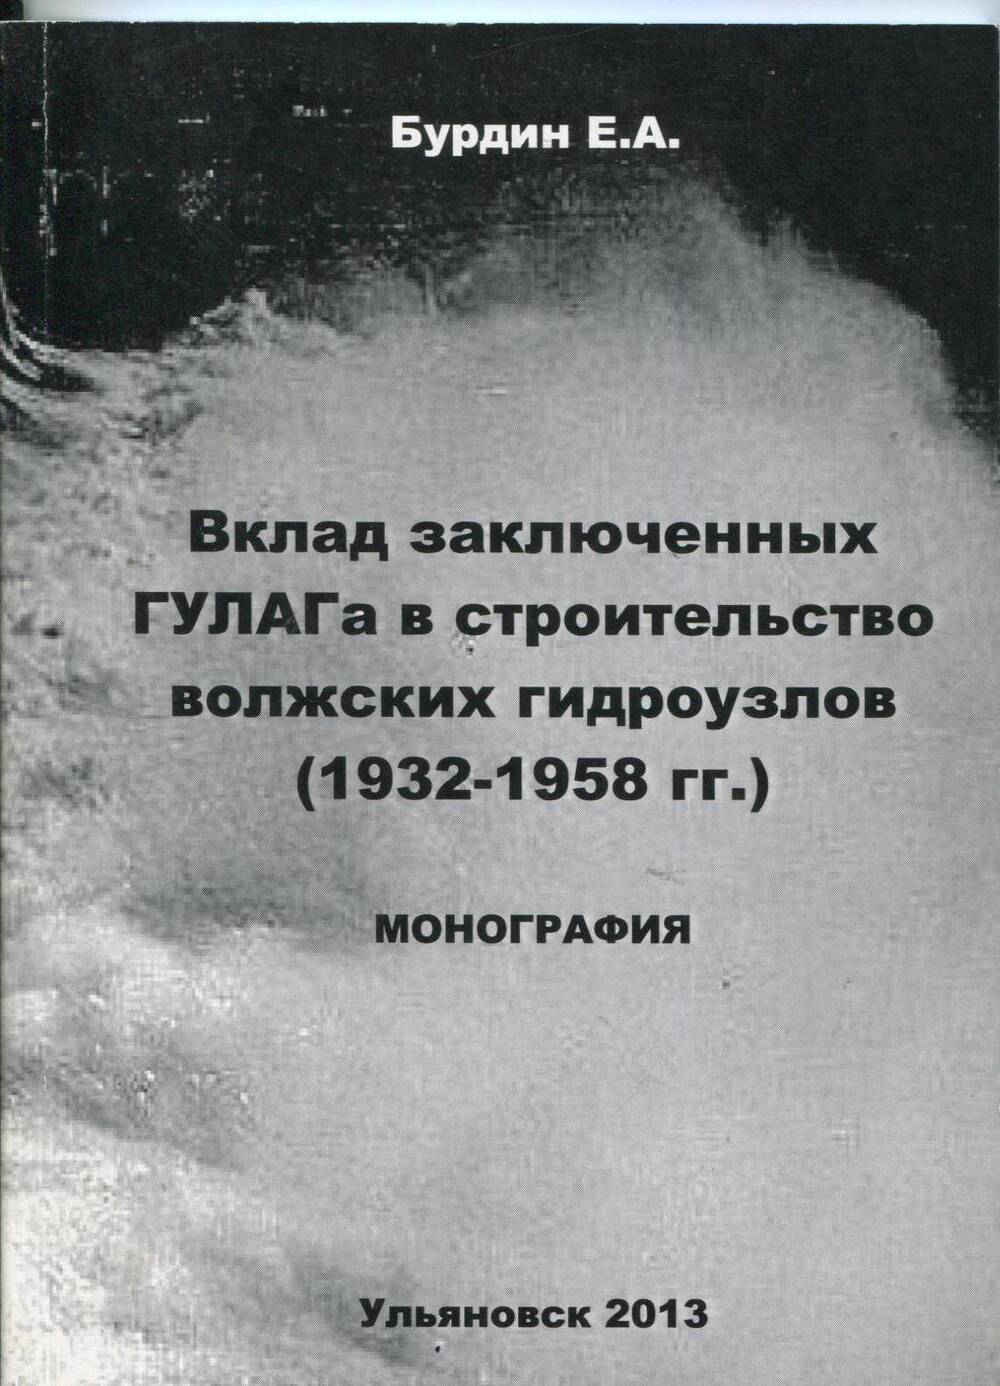 Книга Вклад заключенных Гулага в строительство волжских гидроузлов (1932-1958г.г.) Е.А.Бурдин 2013г.